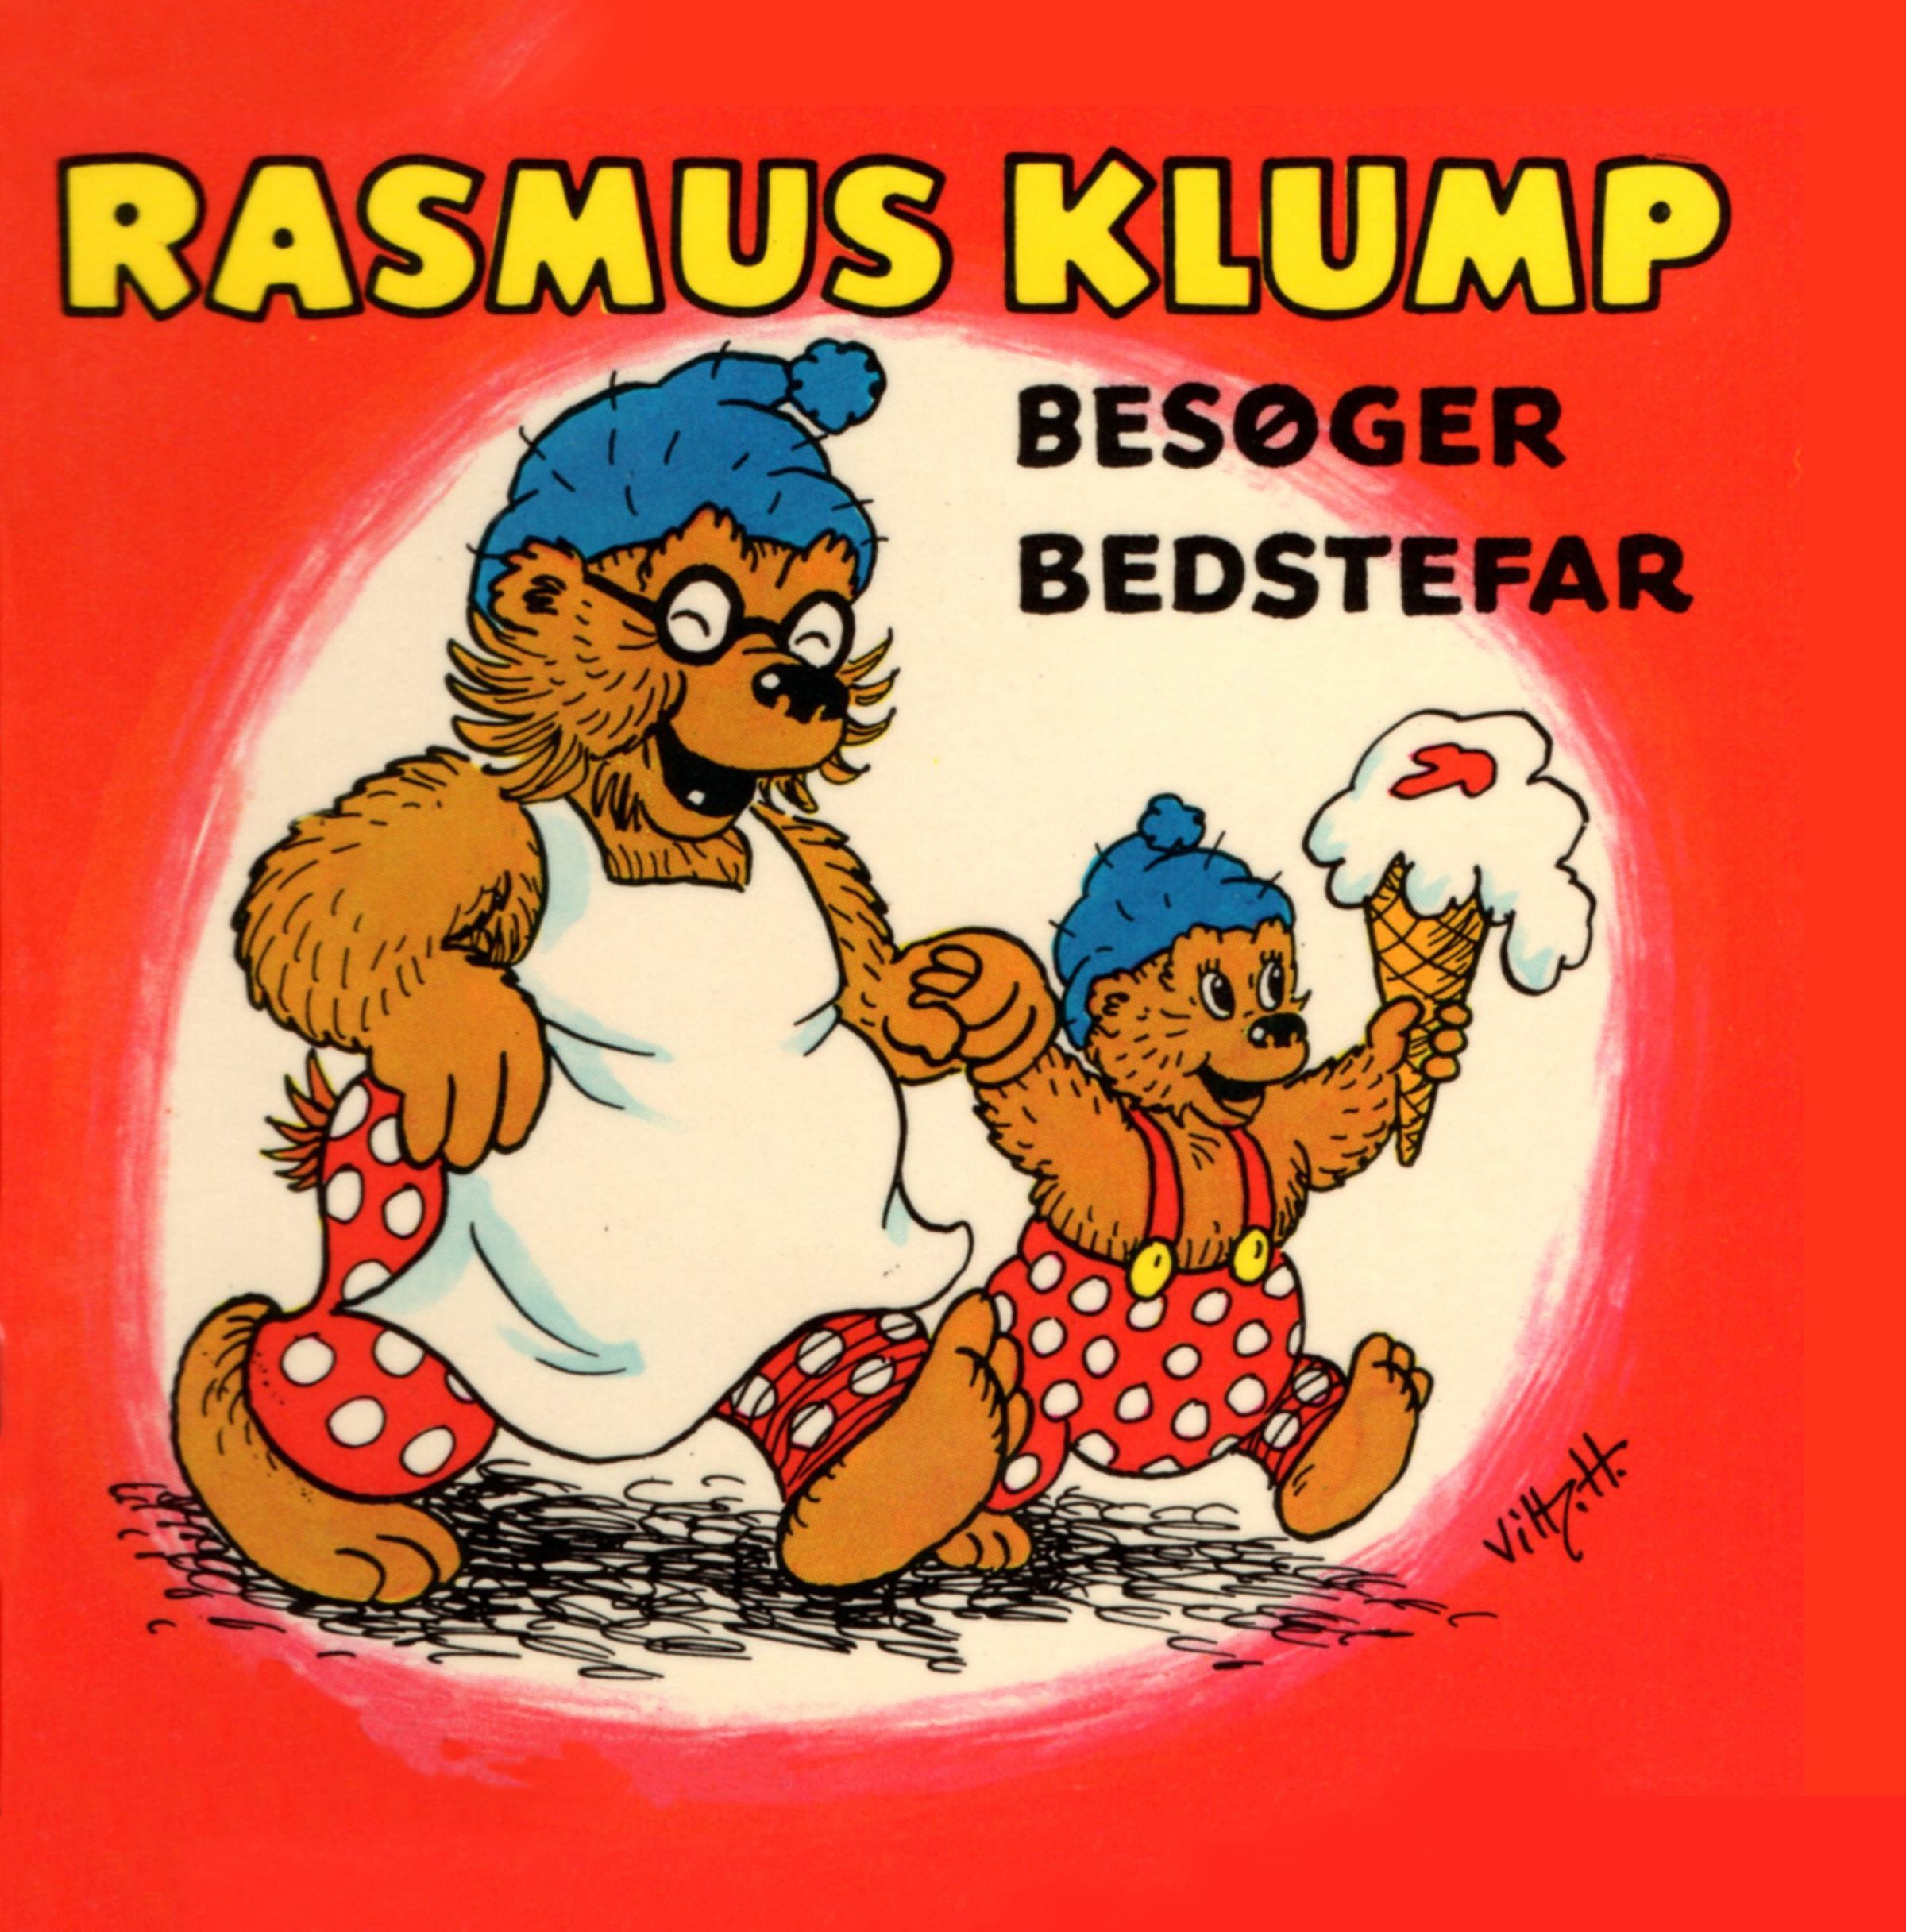 Rasmus Klump besøger bedstefar, ljudbok av Carla Og Vilh. Hansen